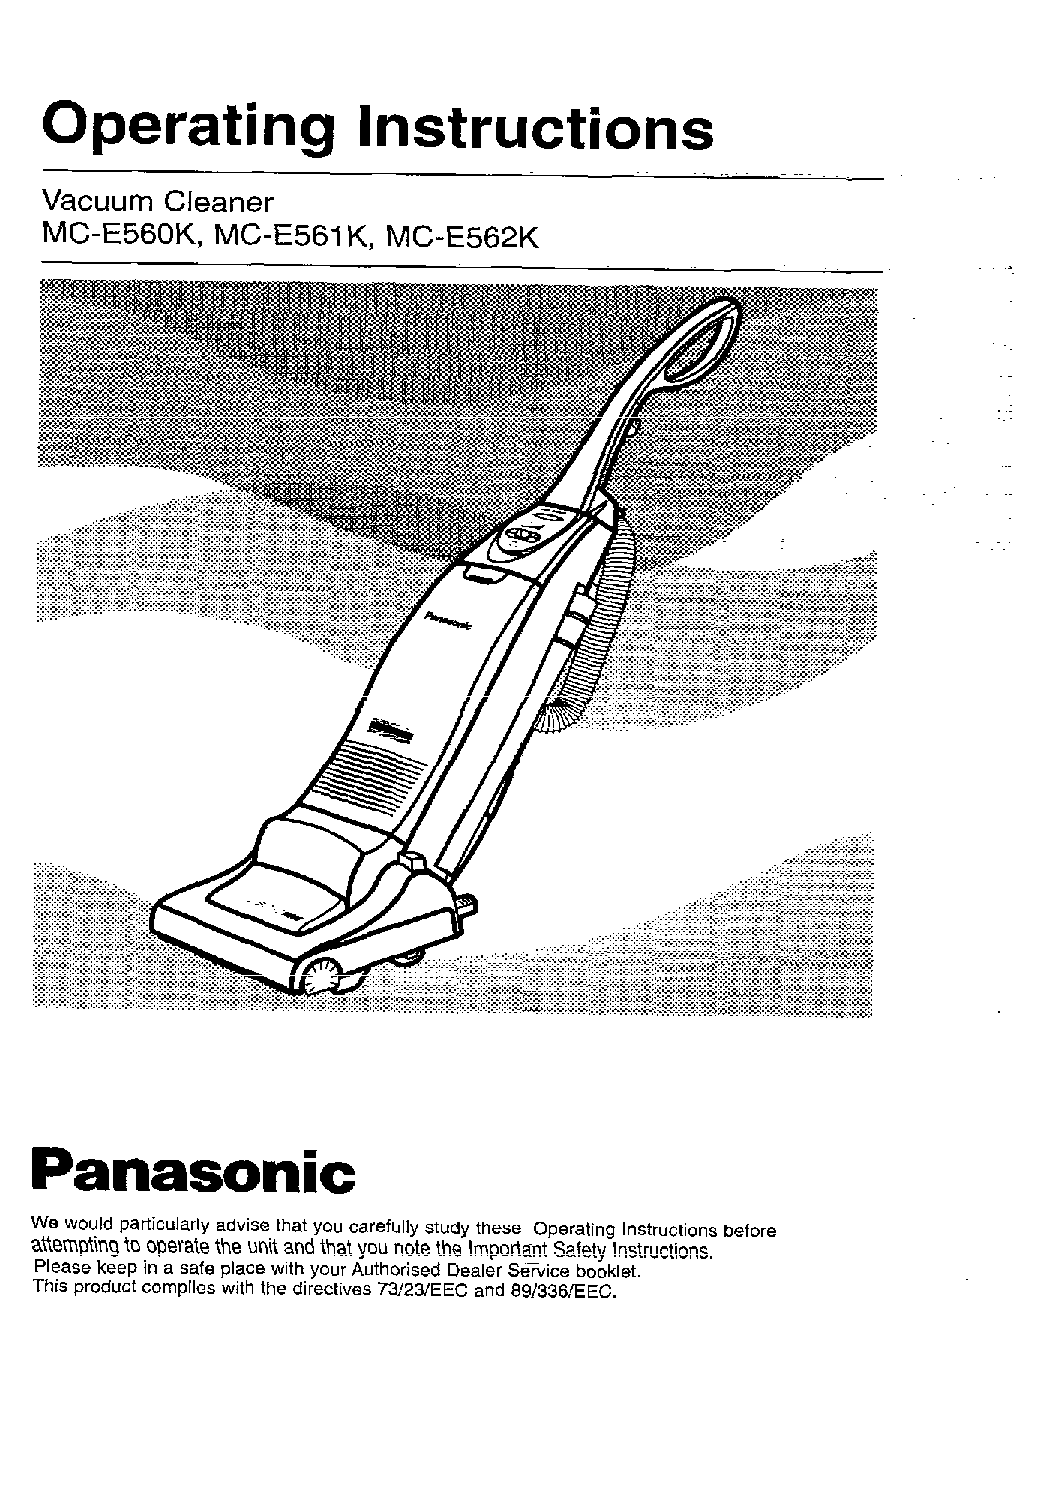 Panasonic MC-E560K, MC-E561K User Manual